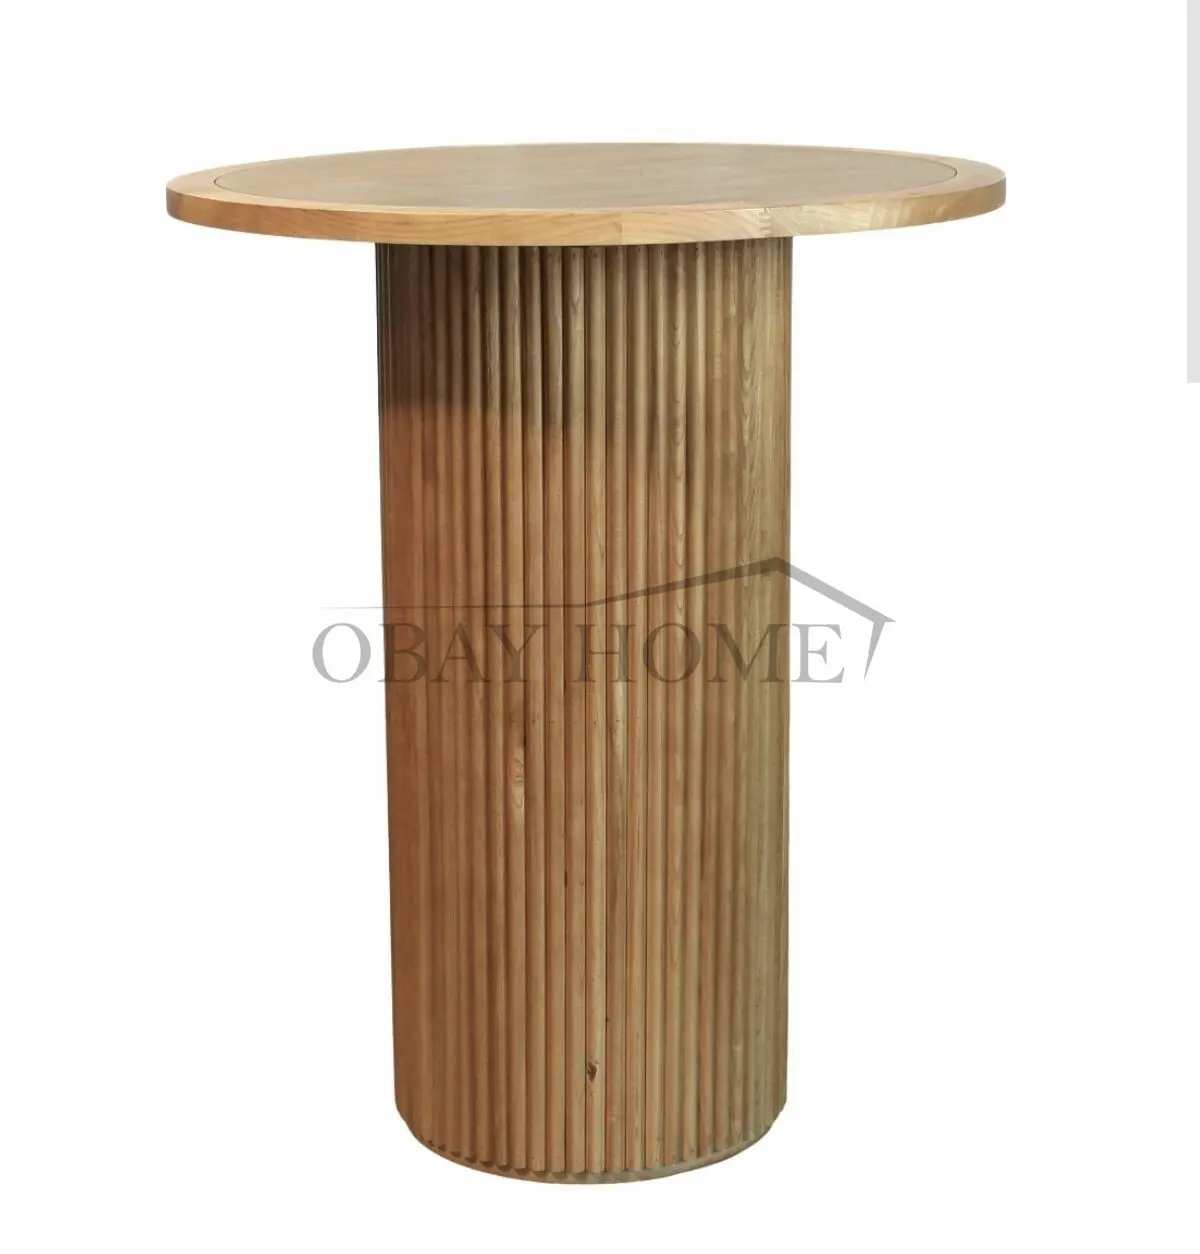 Table de cocktail ronde en bois massif de style tendance location de meubles pour événements table ronde cannelée table de bar en bois pour mariage